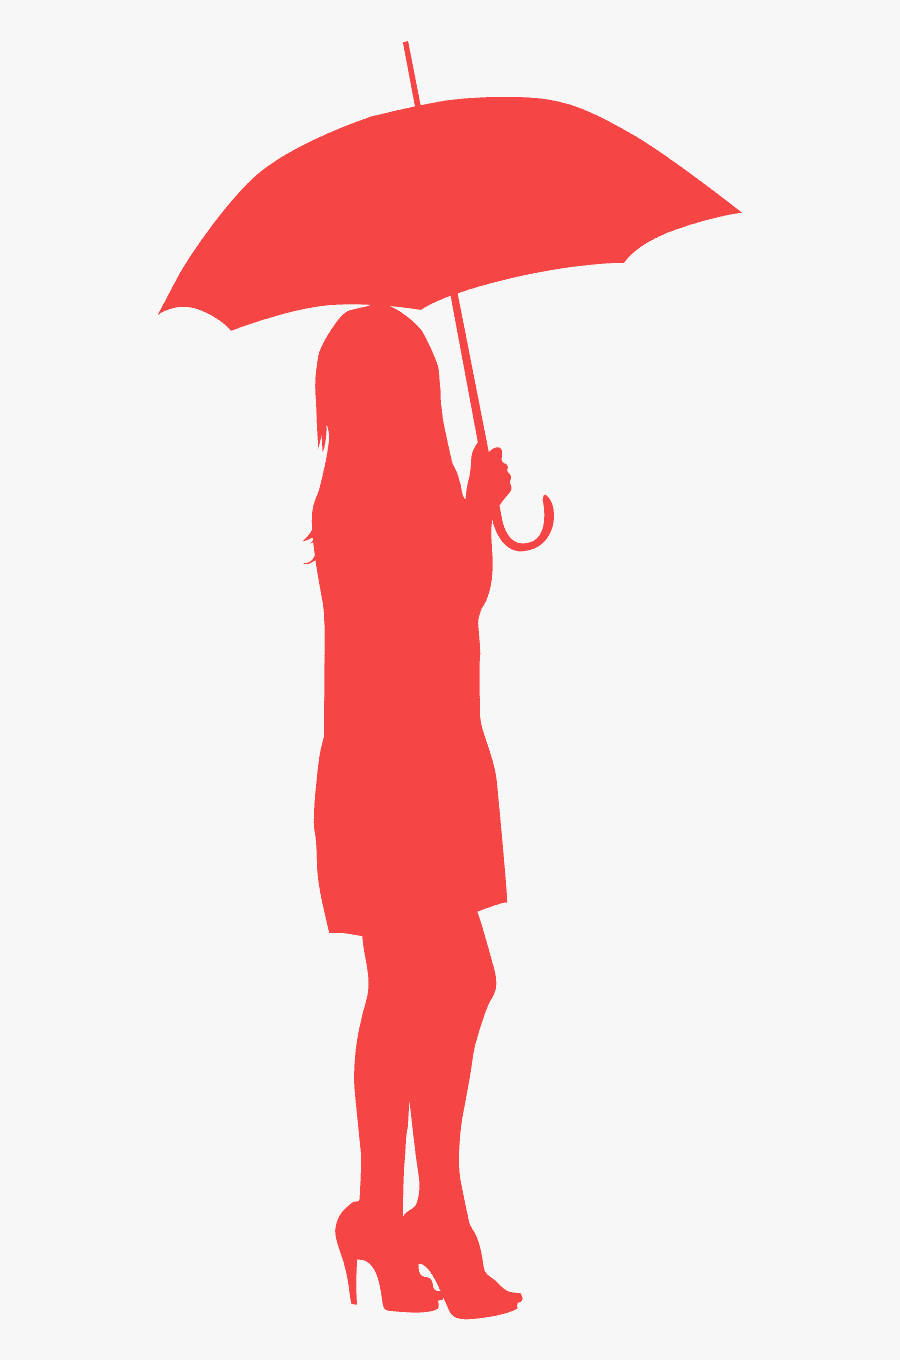 Red Umbrella Silhouette, Transparent Clipart